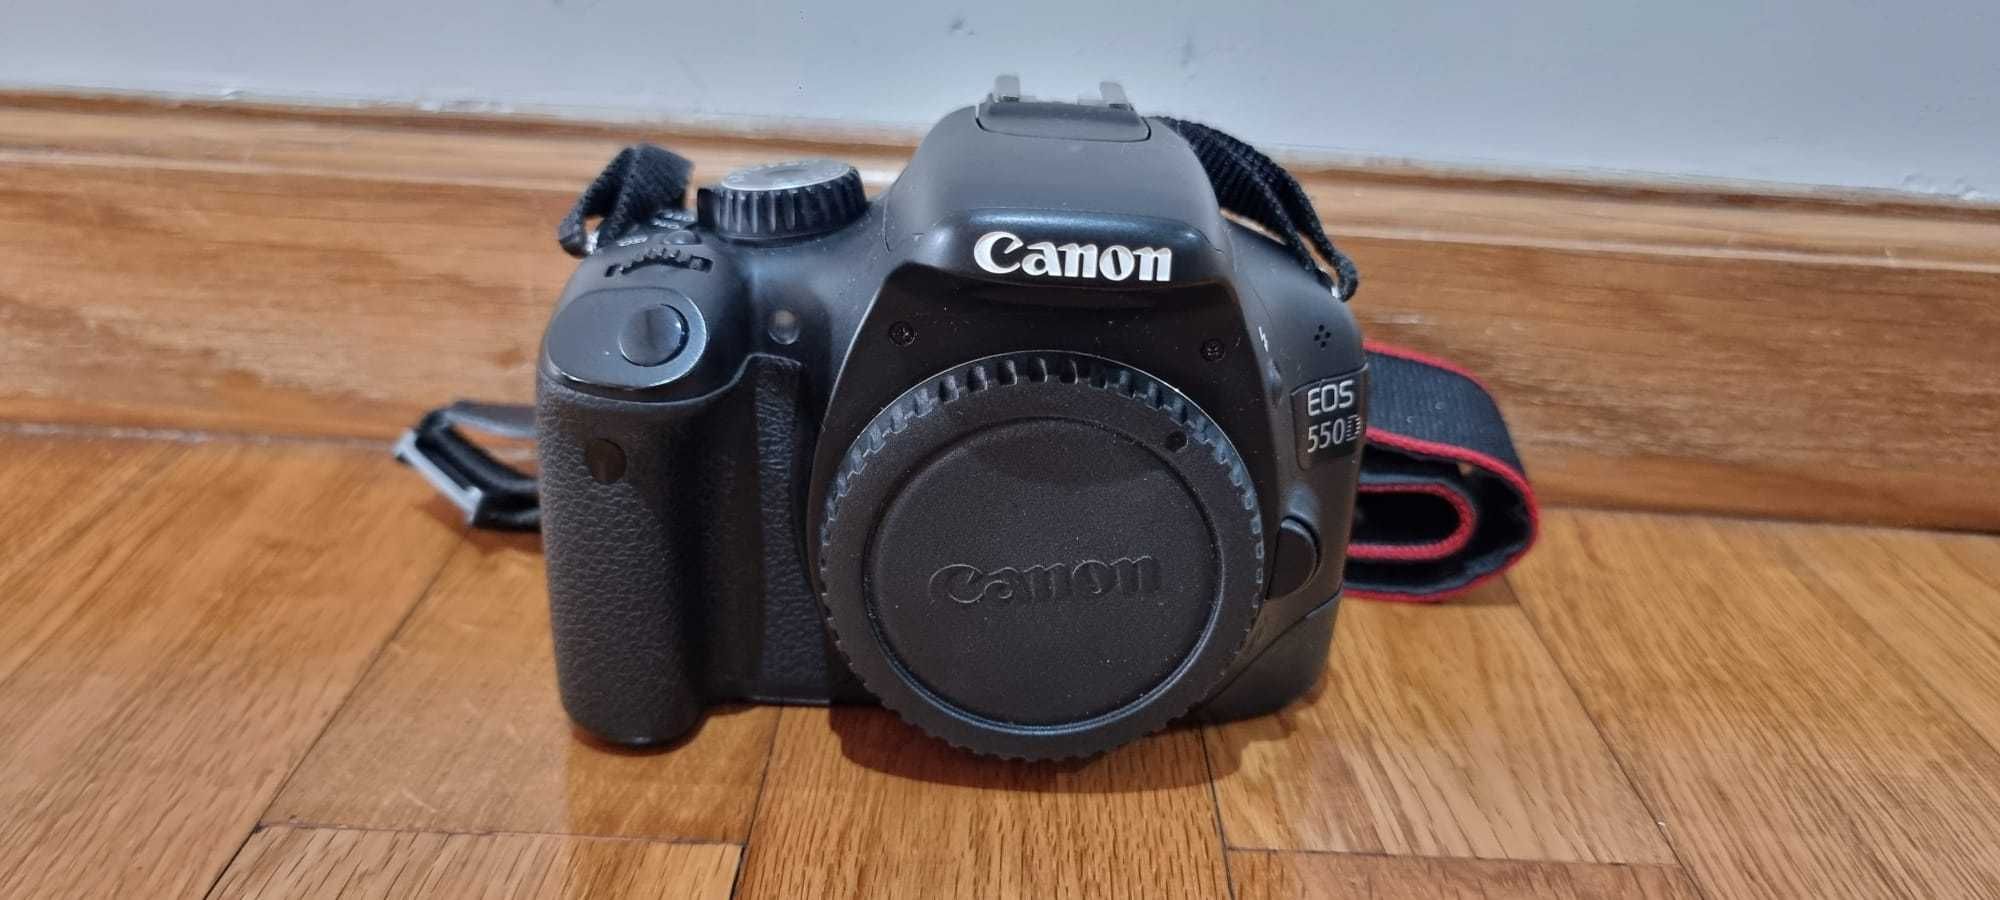 Canon 550D + 18-55mm + punho phottix